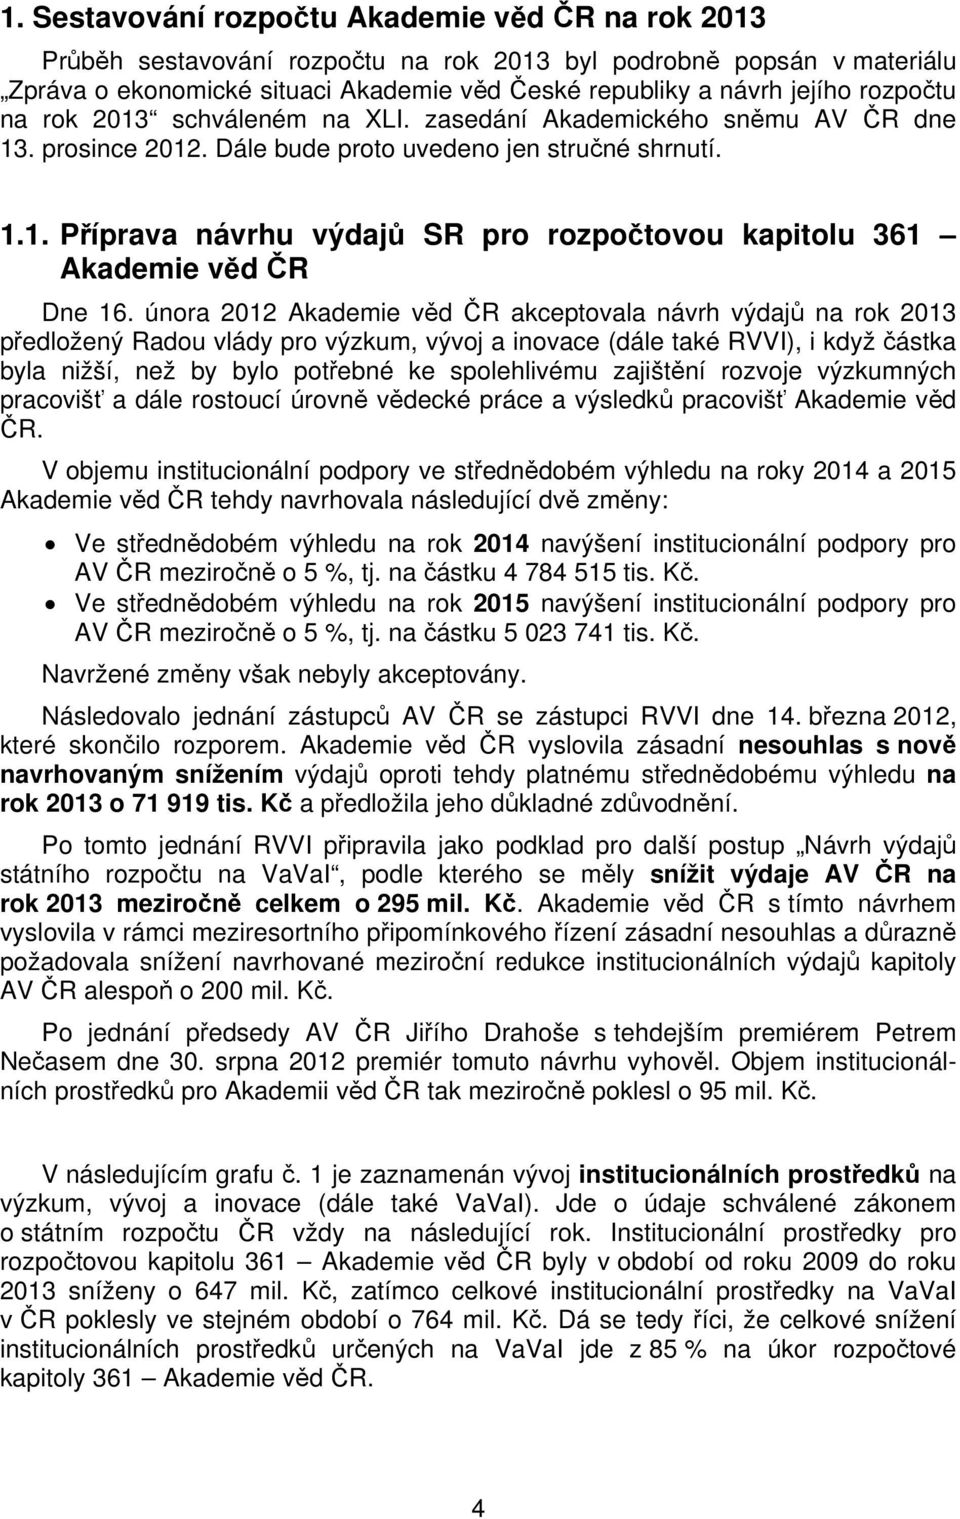 února 2012 Akademie věd ČR akceptovala návrh výdajů na rok 2013 předložený Radou vlády pro výzkum, vývoj a inovace (dále také RVVI), i když částka byla nižší, než by bylo potřebné ke spolehlivému